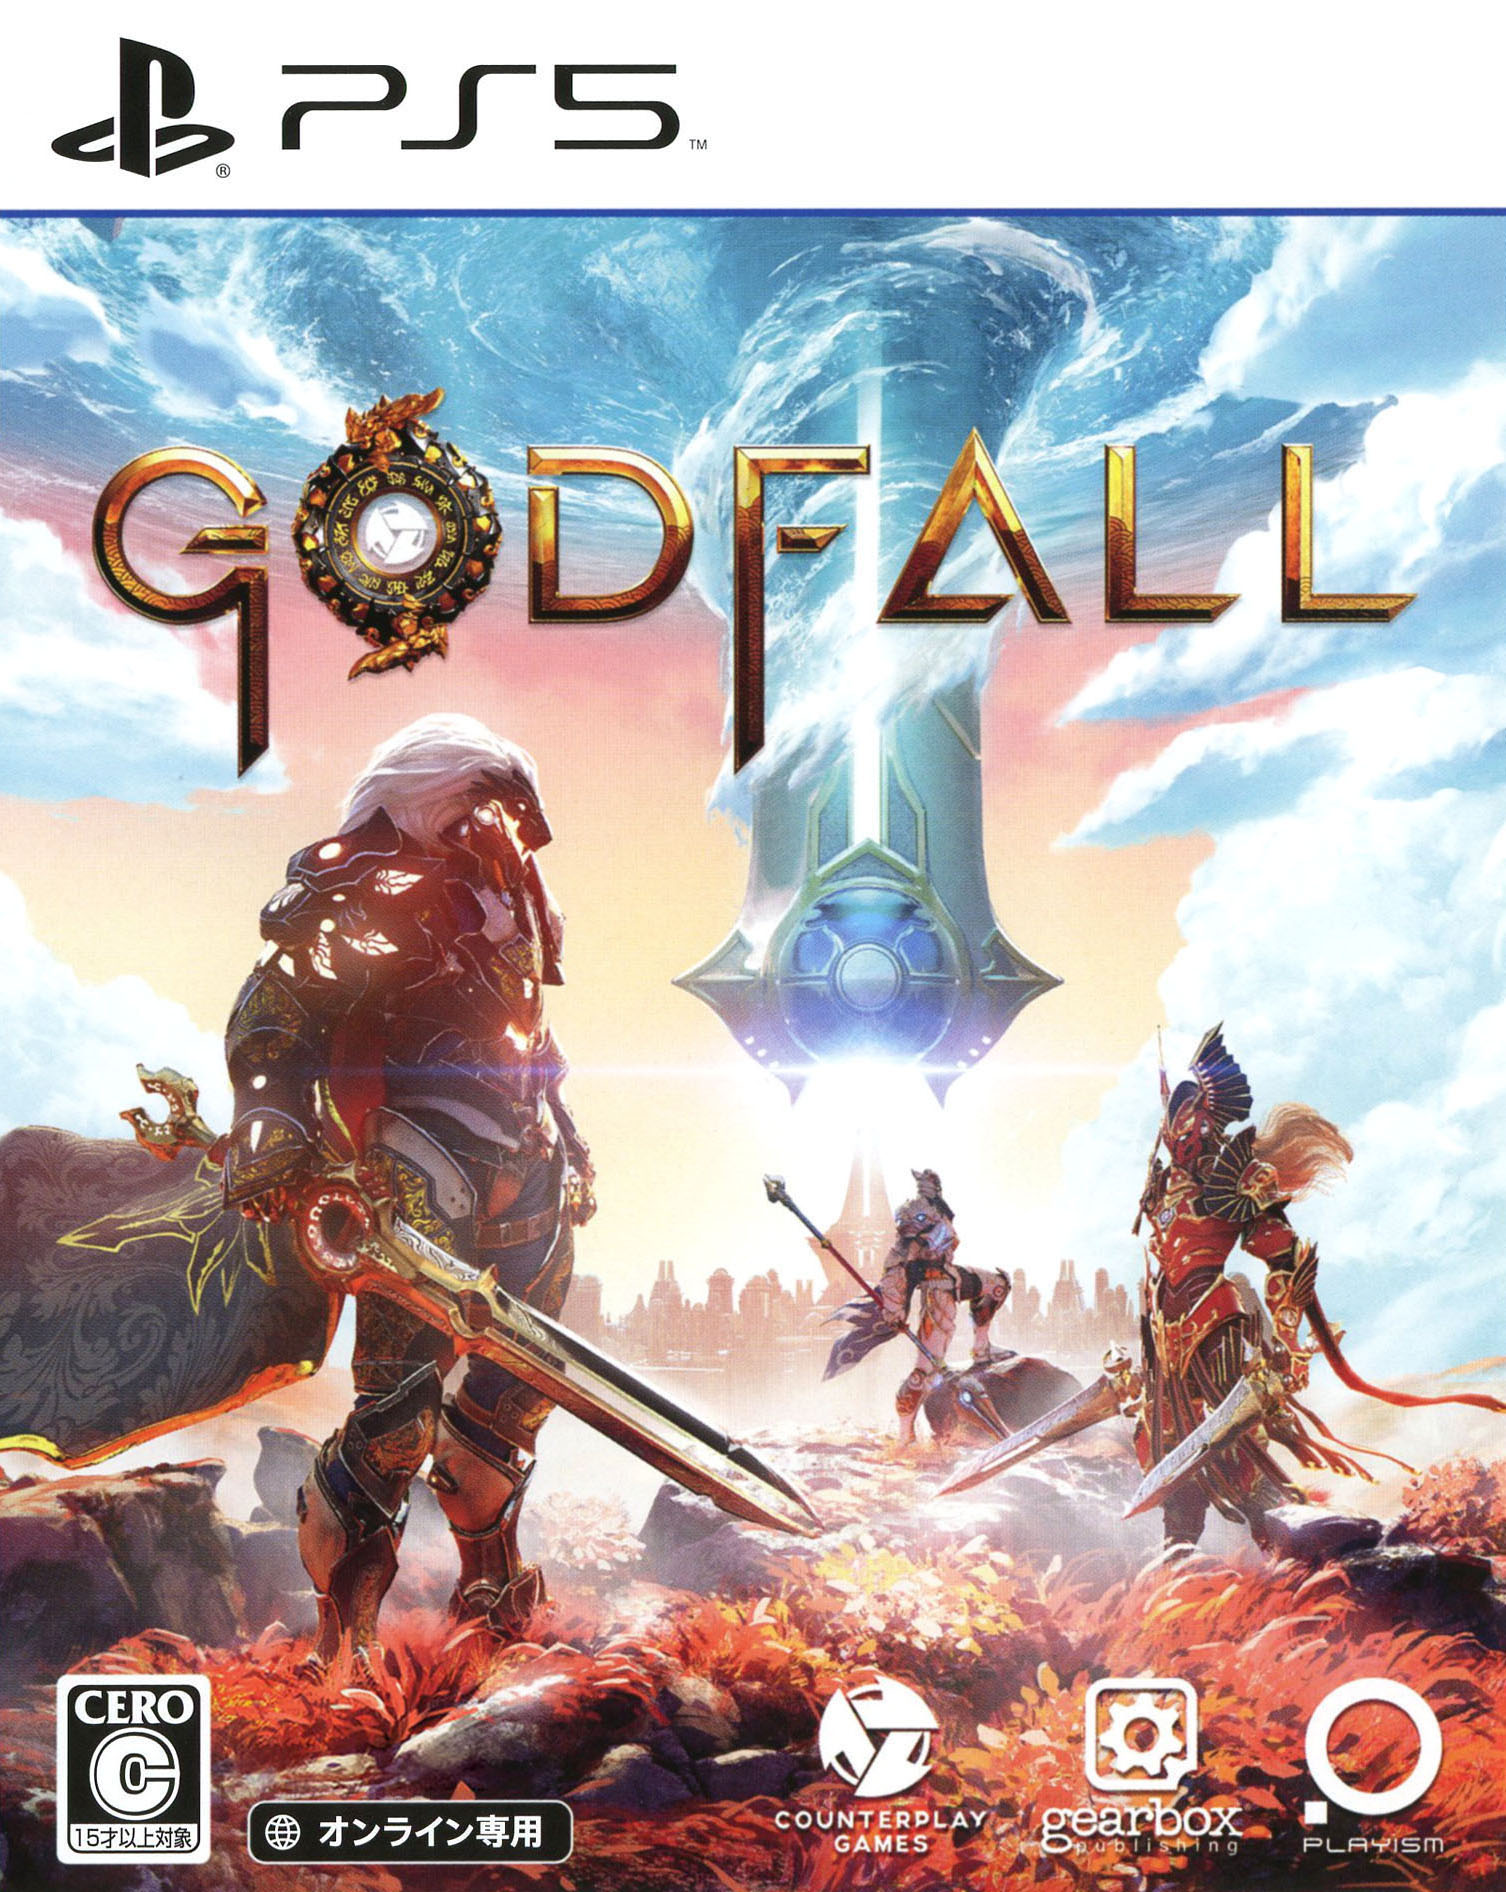 タイトル Godfall &nbsp; ゴッドフォール ジャンル ロールプレイング/アクション 機種 プレイステーション5 発売日 2020/11/12発売 規格番号 ELJM-30017 JAN 4589794580128 まったく新しい次世代の｢ルータースラッシャー｣ゲーム『Godfall』の舞台は、英雄的な騎士やいにしえの魔法の数々が登場する、色鮮やかなファンタジーの世界。ファンタジーアクションRPGで冒険に乗り出そう。圧倒的なサードパーソン視点の近接戦闘で、戦利品を求めて戦いを繰り広げ、伝説の鎧を身に纏って邪悪な敵を打ち倒せ。 ※中古商品の場合、商品名に「初回」や「限定」・「○○付き」（例　Tシャツ付き）等の記載がございましても、特典等は原則付属しておりません。また、中古という特性上ダウンロードコード・プロダクトコードも保証の対象外です。コードが使用できない等の返品はお受けできません。ゲーム周辺機器の箱・取扱説明書及び、ゲーム機本体のプリインストールソフト、同梱されているダウンロードコードは初期化をしていますので、保証の対象外となっております。 尚、商品画像はイメージです。 ※2点以上お買い求めのお客様へ※ 当サイトの商品は、ゲオの店舗と共有しております。 商品保有数の関係上、異なる店舗から発送になる場合があり、お届けの荷物が複数にわかれたり、到着日時が異なる可能性がございます。（お荷物が複数になっても、送料・代引き手数料が重複する事はございません） 尚、複数にわけて発送した場合、お荷物にはその旨が記載されておりますので、お手数ですが、お荷物到着時にご確認いただけますよう、お願い申し上げます。 ※ご登録頂いた配送先住所内容の不備等により、弊社へ商品が返還された場合は自動的にキャンセル処理となりますので、配送先住所の登録の際には、お間違いのないよう、くれぐれもご注意お願い申し上げます。 ※商品の状態問合せに関しまして、弊社は複数の拠点で商品の管理を行っておりますので、お答えができません。 ※当サイトの在庫について 当サイトの商品は店舗と在庫共有をしており、注文の重複や、商品の事故等が原因により、ご注文頂いた後に、 キャンセルさせていただく場合がございます。 楽天ポイントの付与・買いまわり店舗数のカウント等につきましても、発送確定した商品のみの対象になりますので、キャンセルさせて頂いた商品につきましては、補償の対象外とさせていただきます。 ご了承の上ご注文下さい。